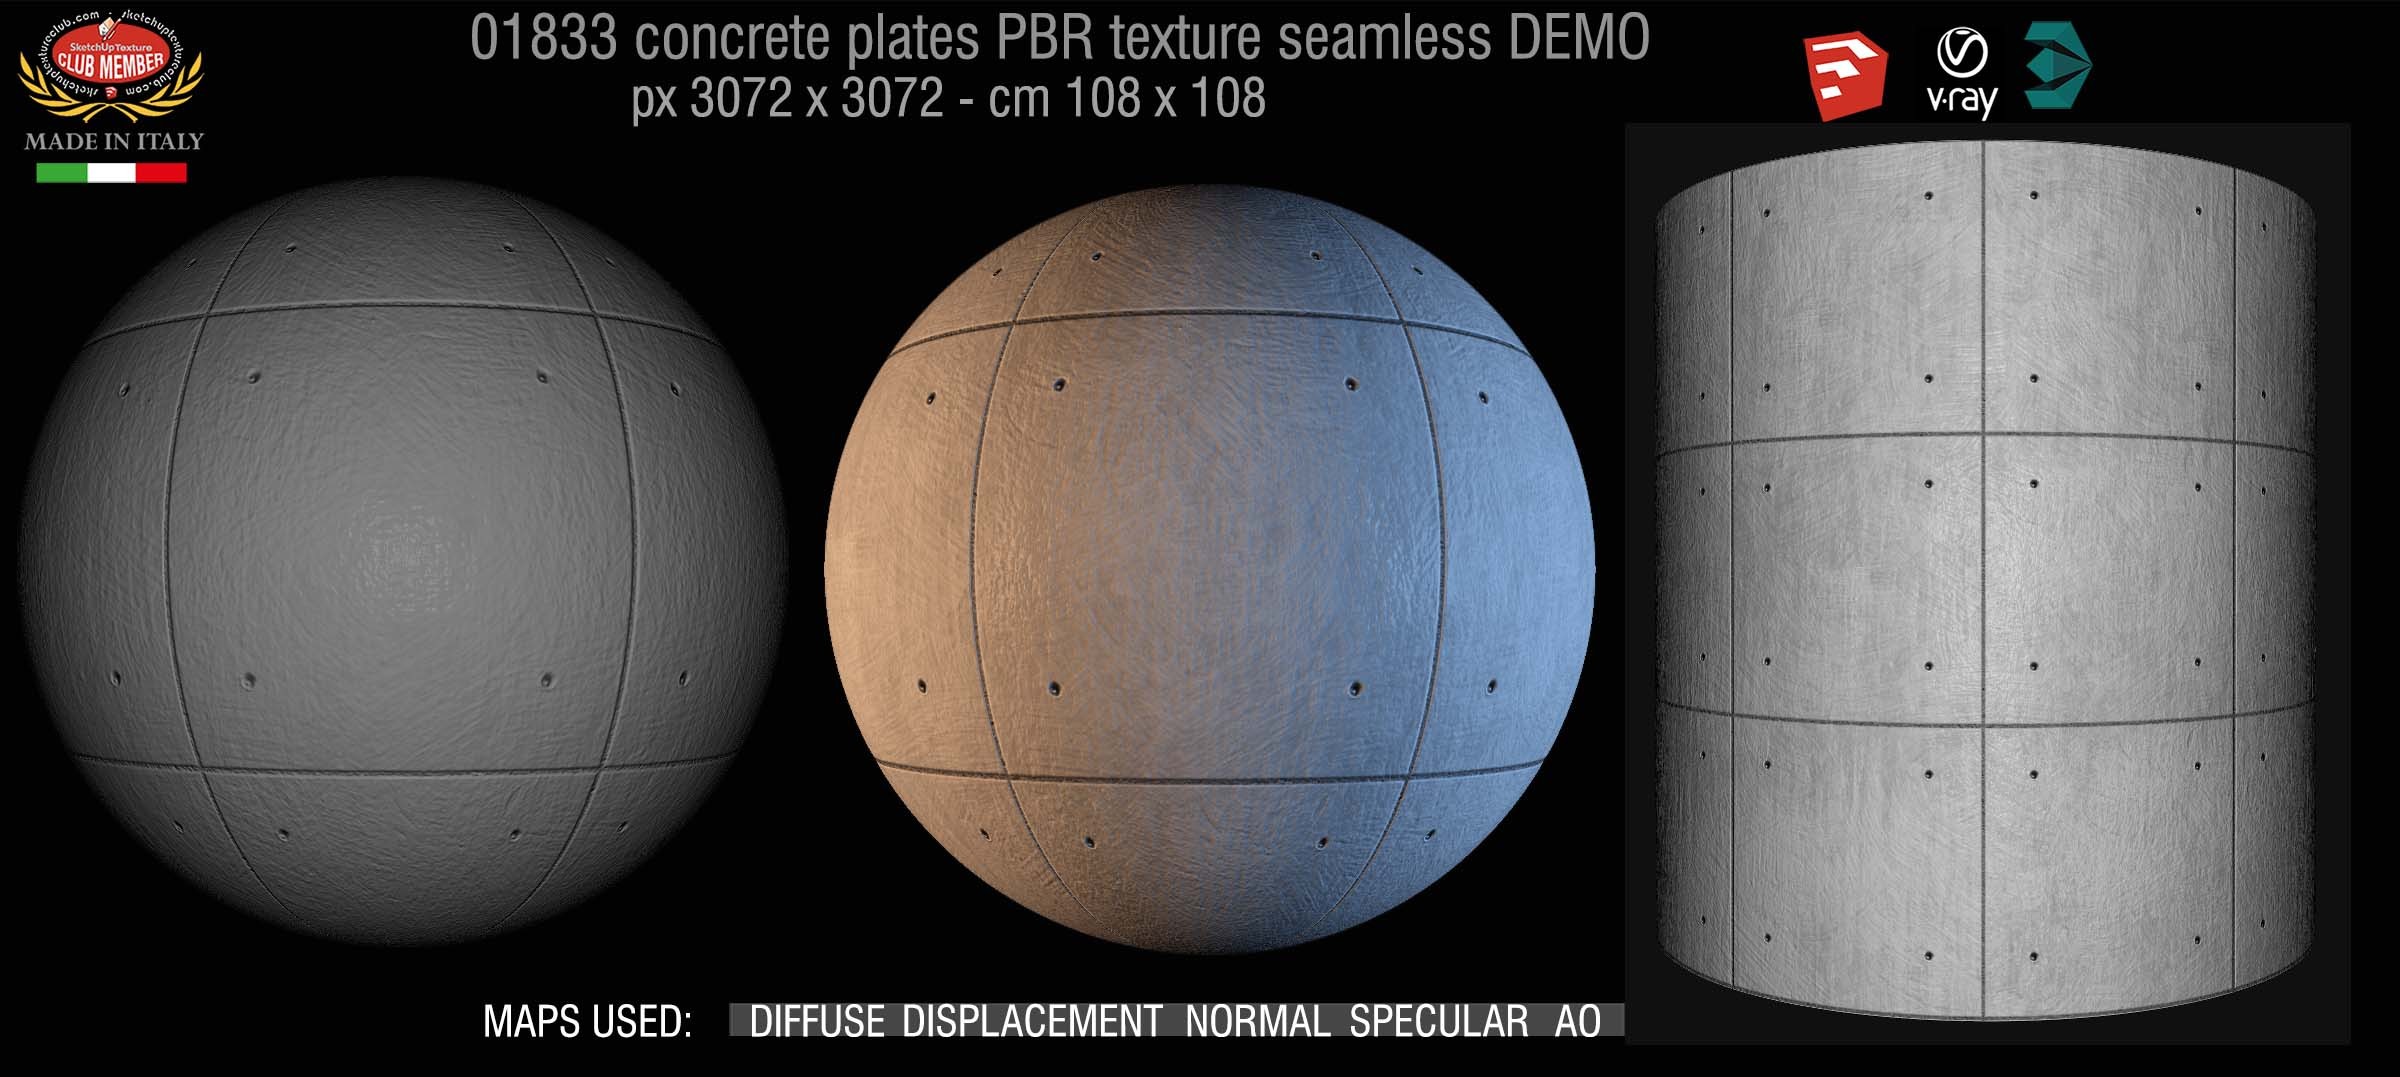 01833 Tadao Ando concrete plates PBR texture seamless DEMO